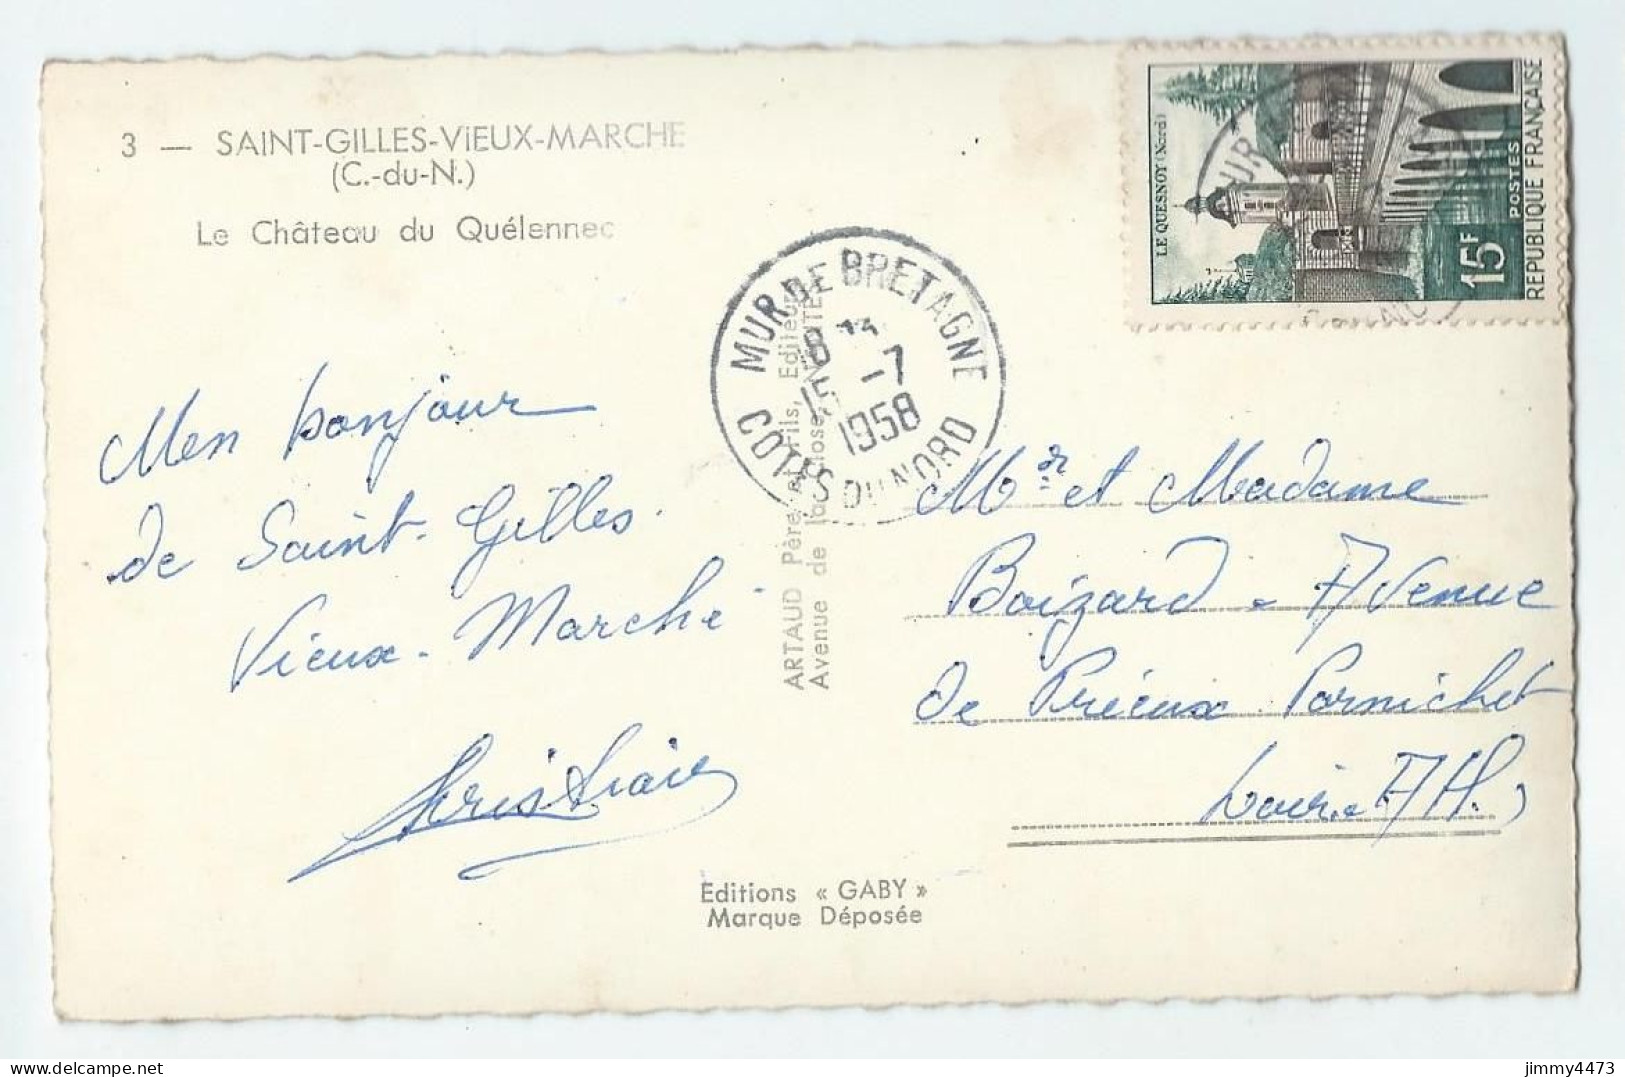 CPSM - SAINT-GILLES-VIEUX-MARCHE (C.-du-N.) - Le Château Du Quélennec En 1958 - N° 3 - Edit. ARTAUD - Saint-Gilles-Vieux-Marché